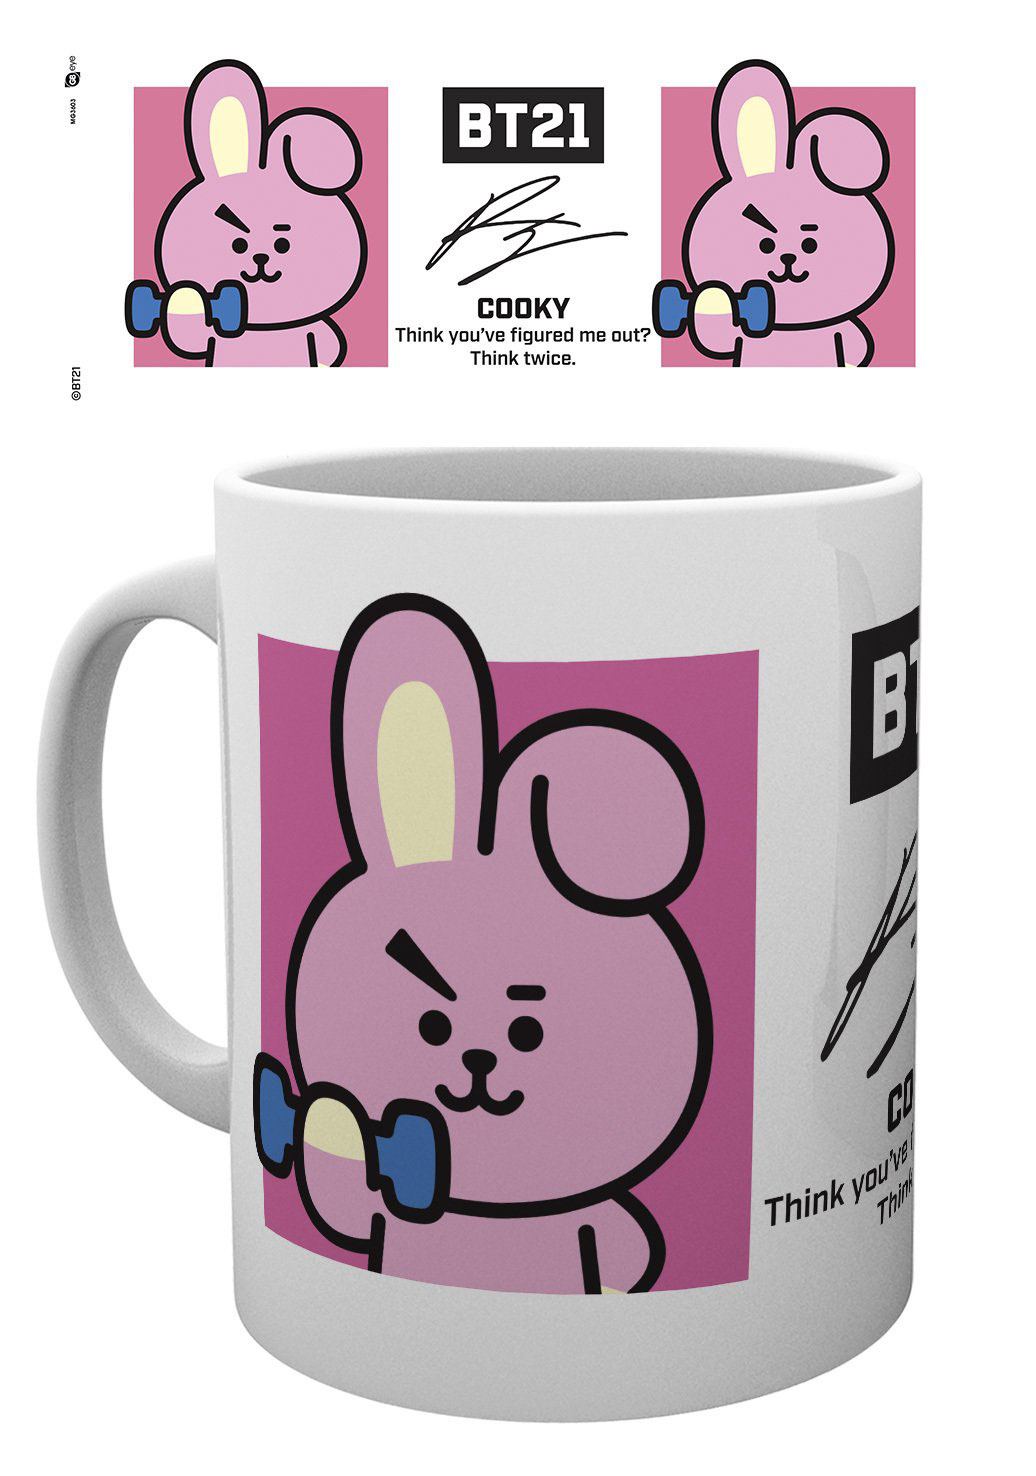 BT21 mug Cooky